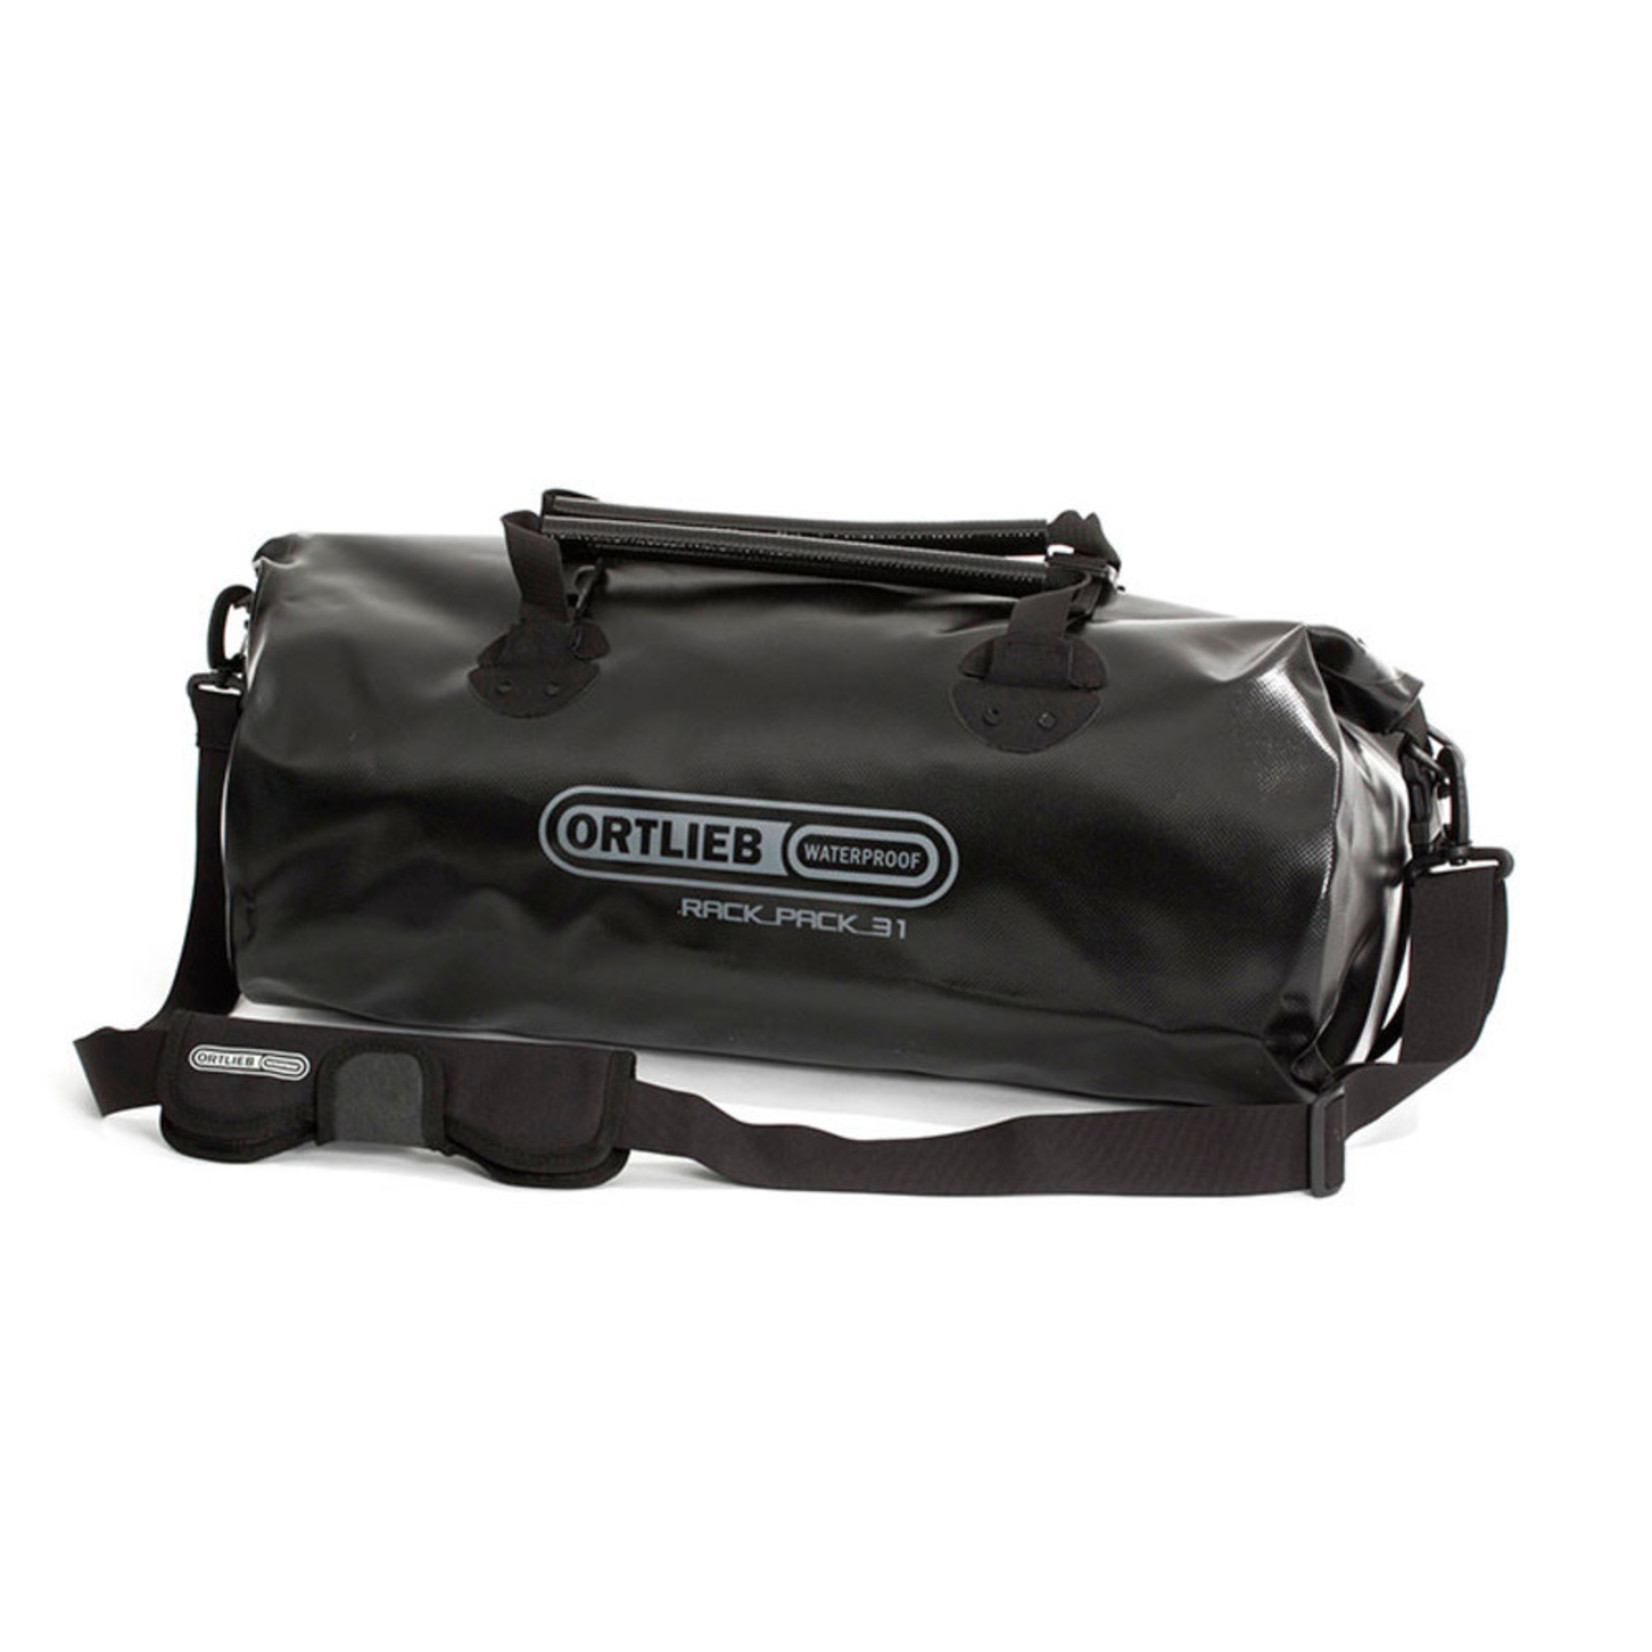 Ortlieb New Ortlieb 100% Waterproof Travel Rack-Pack Bag K62 Medium - 31L - Black